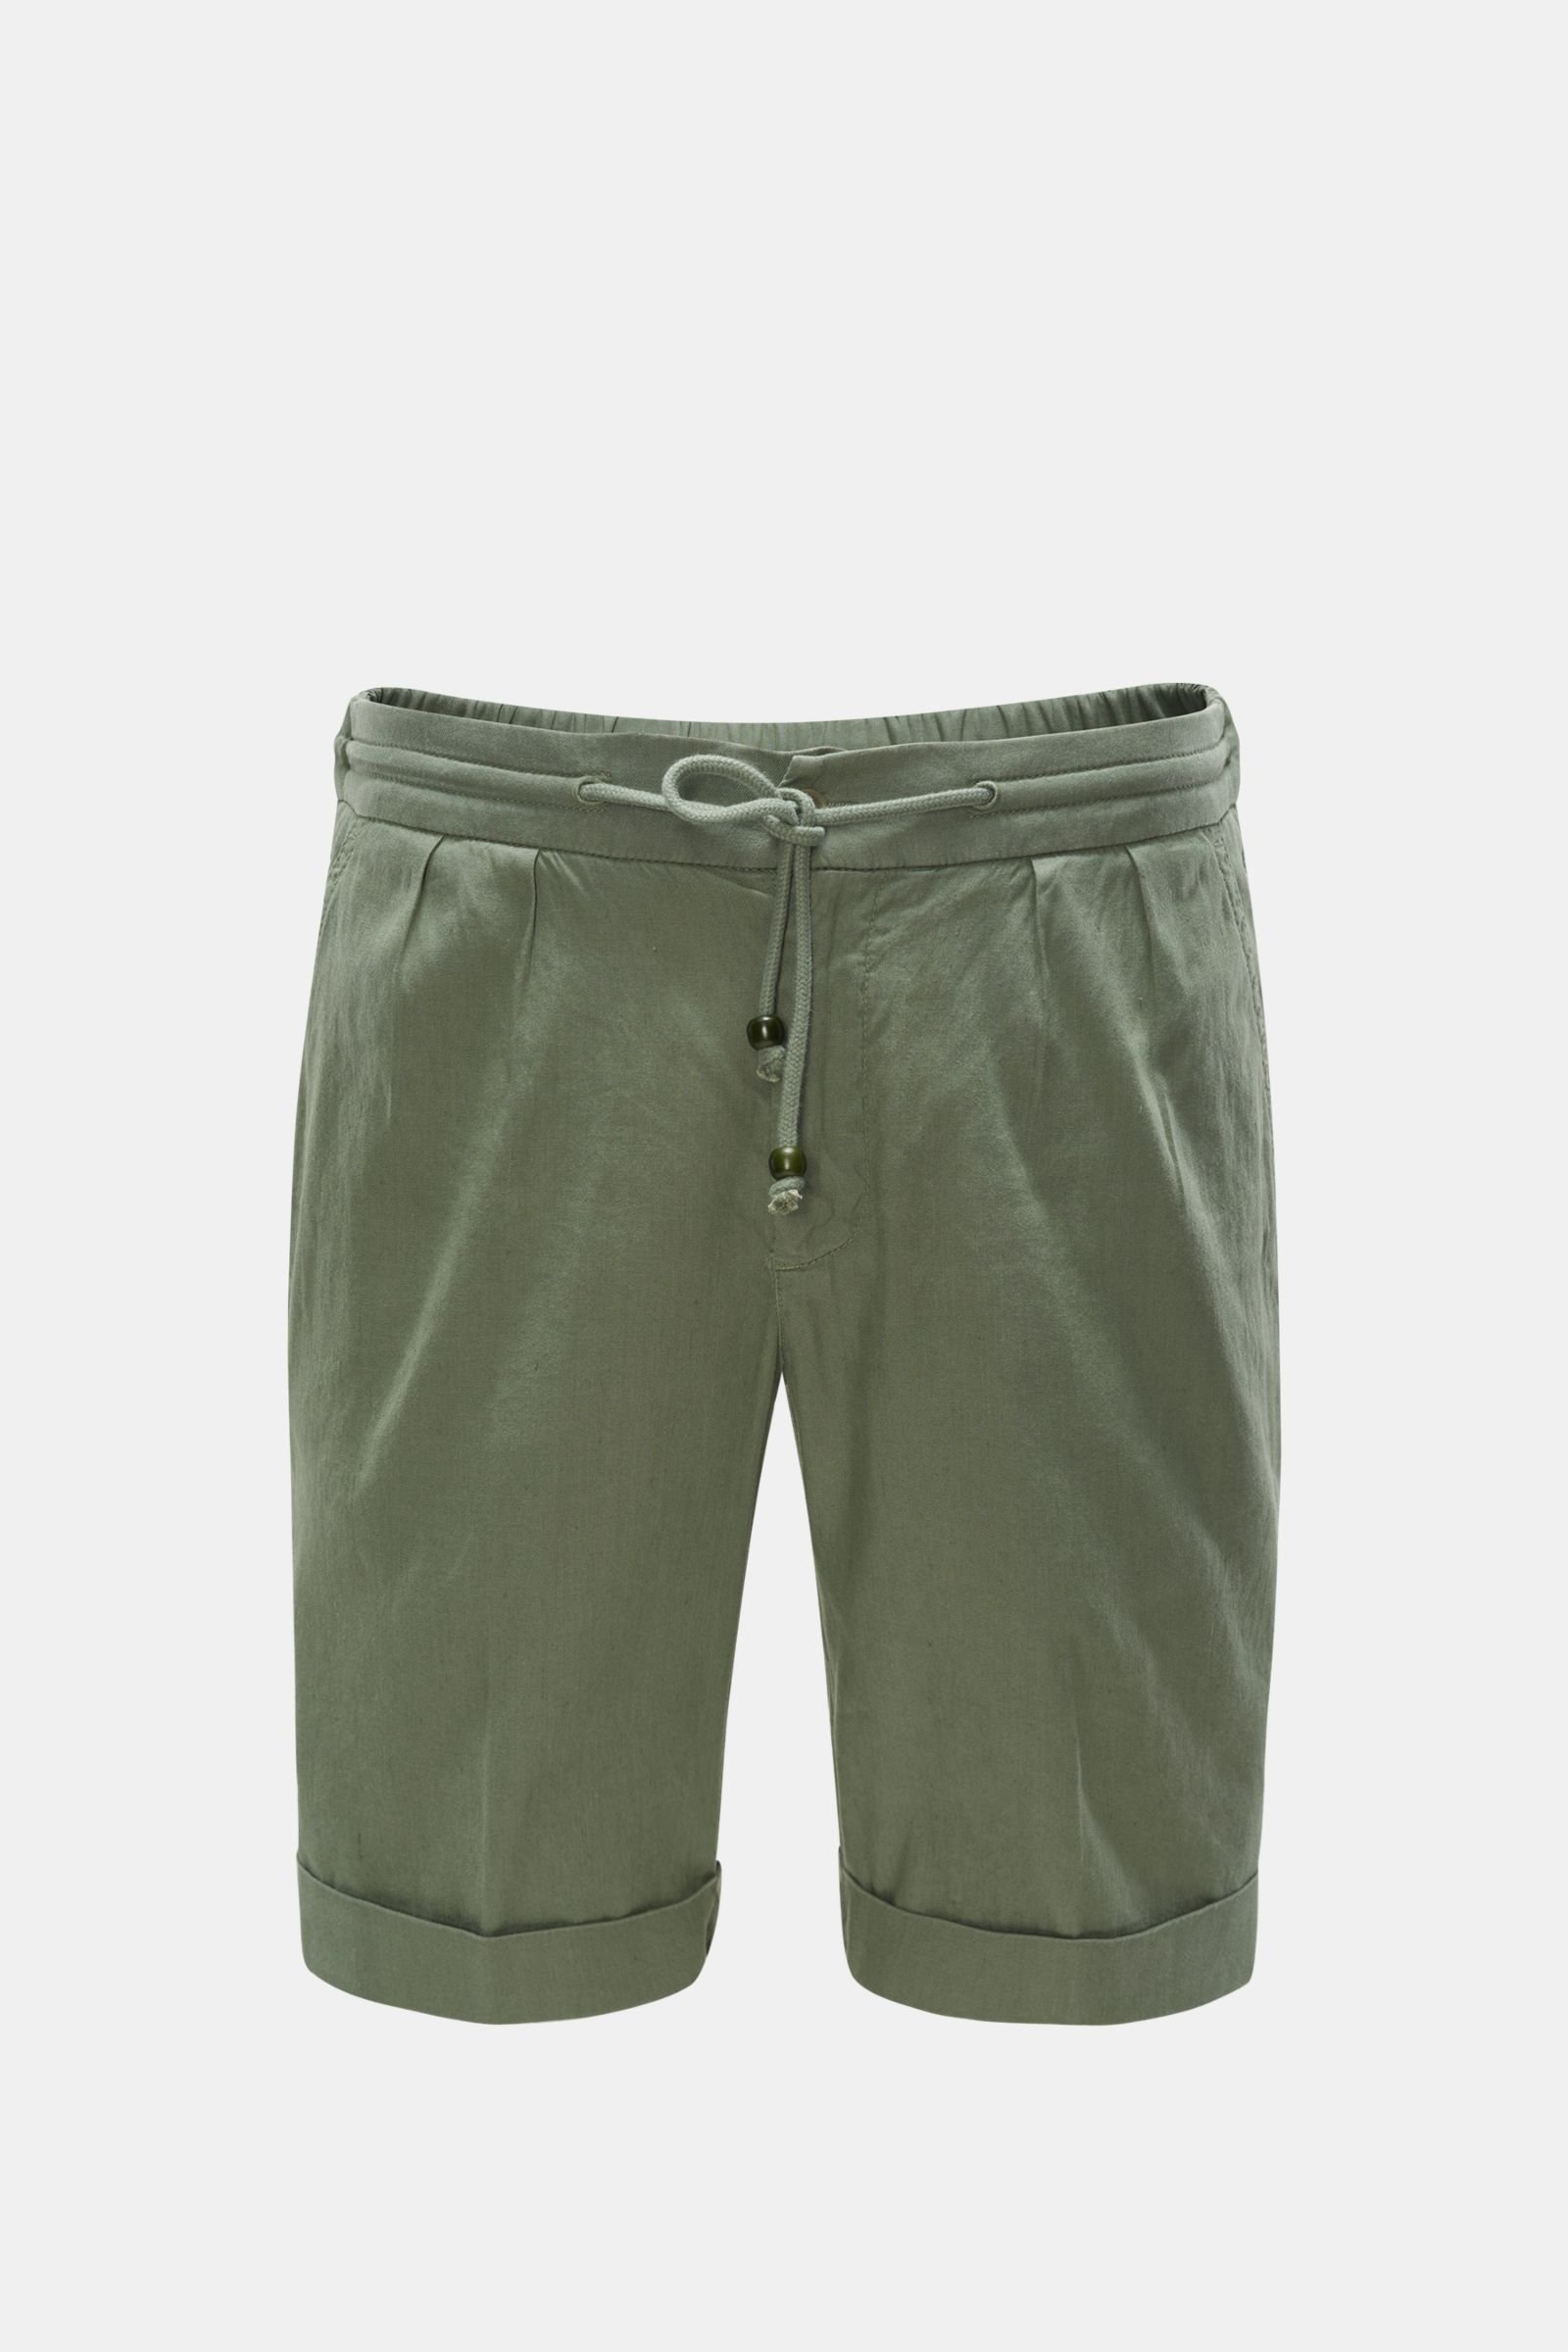 Shorts grey-green